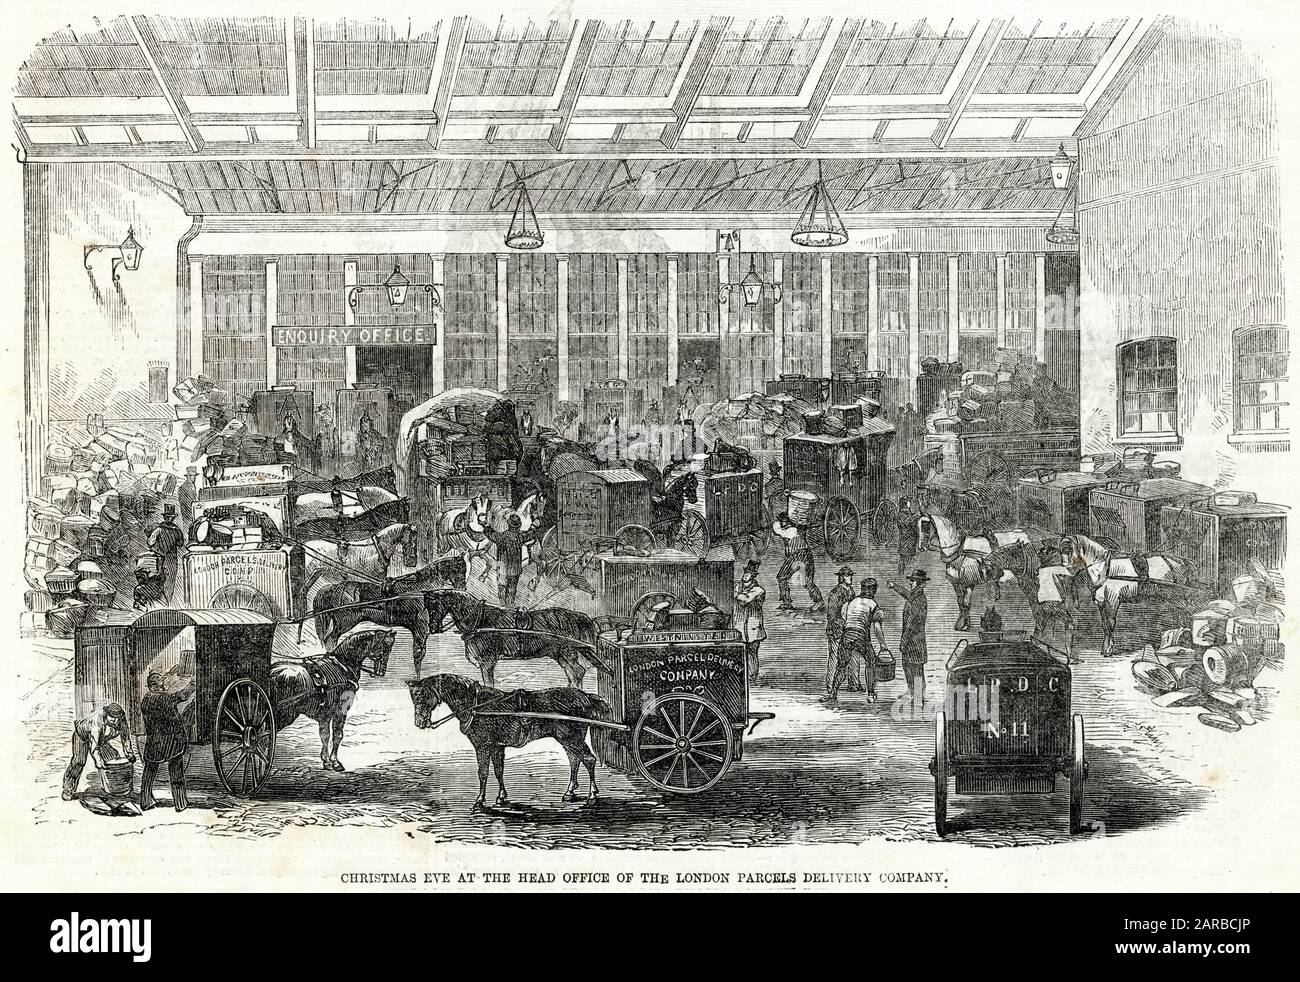 London Parcels Delivery Company, siège social dans le bâtiment Rolls, Fetter-Lane, Londres. La cour avec déracinement de l'agitation et de l'activité, attend leur tour de devoir. Date: 1862 Banque D'Images